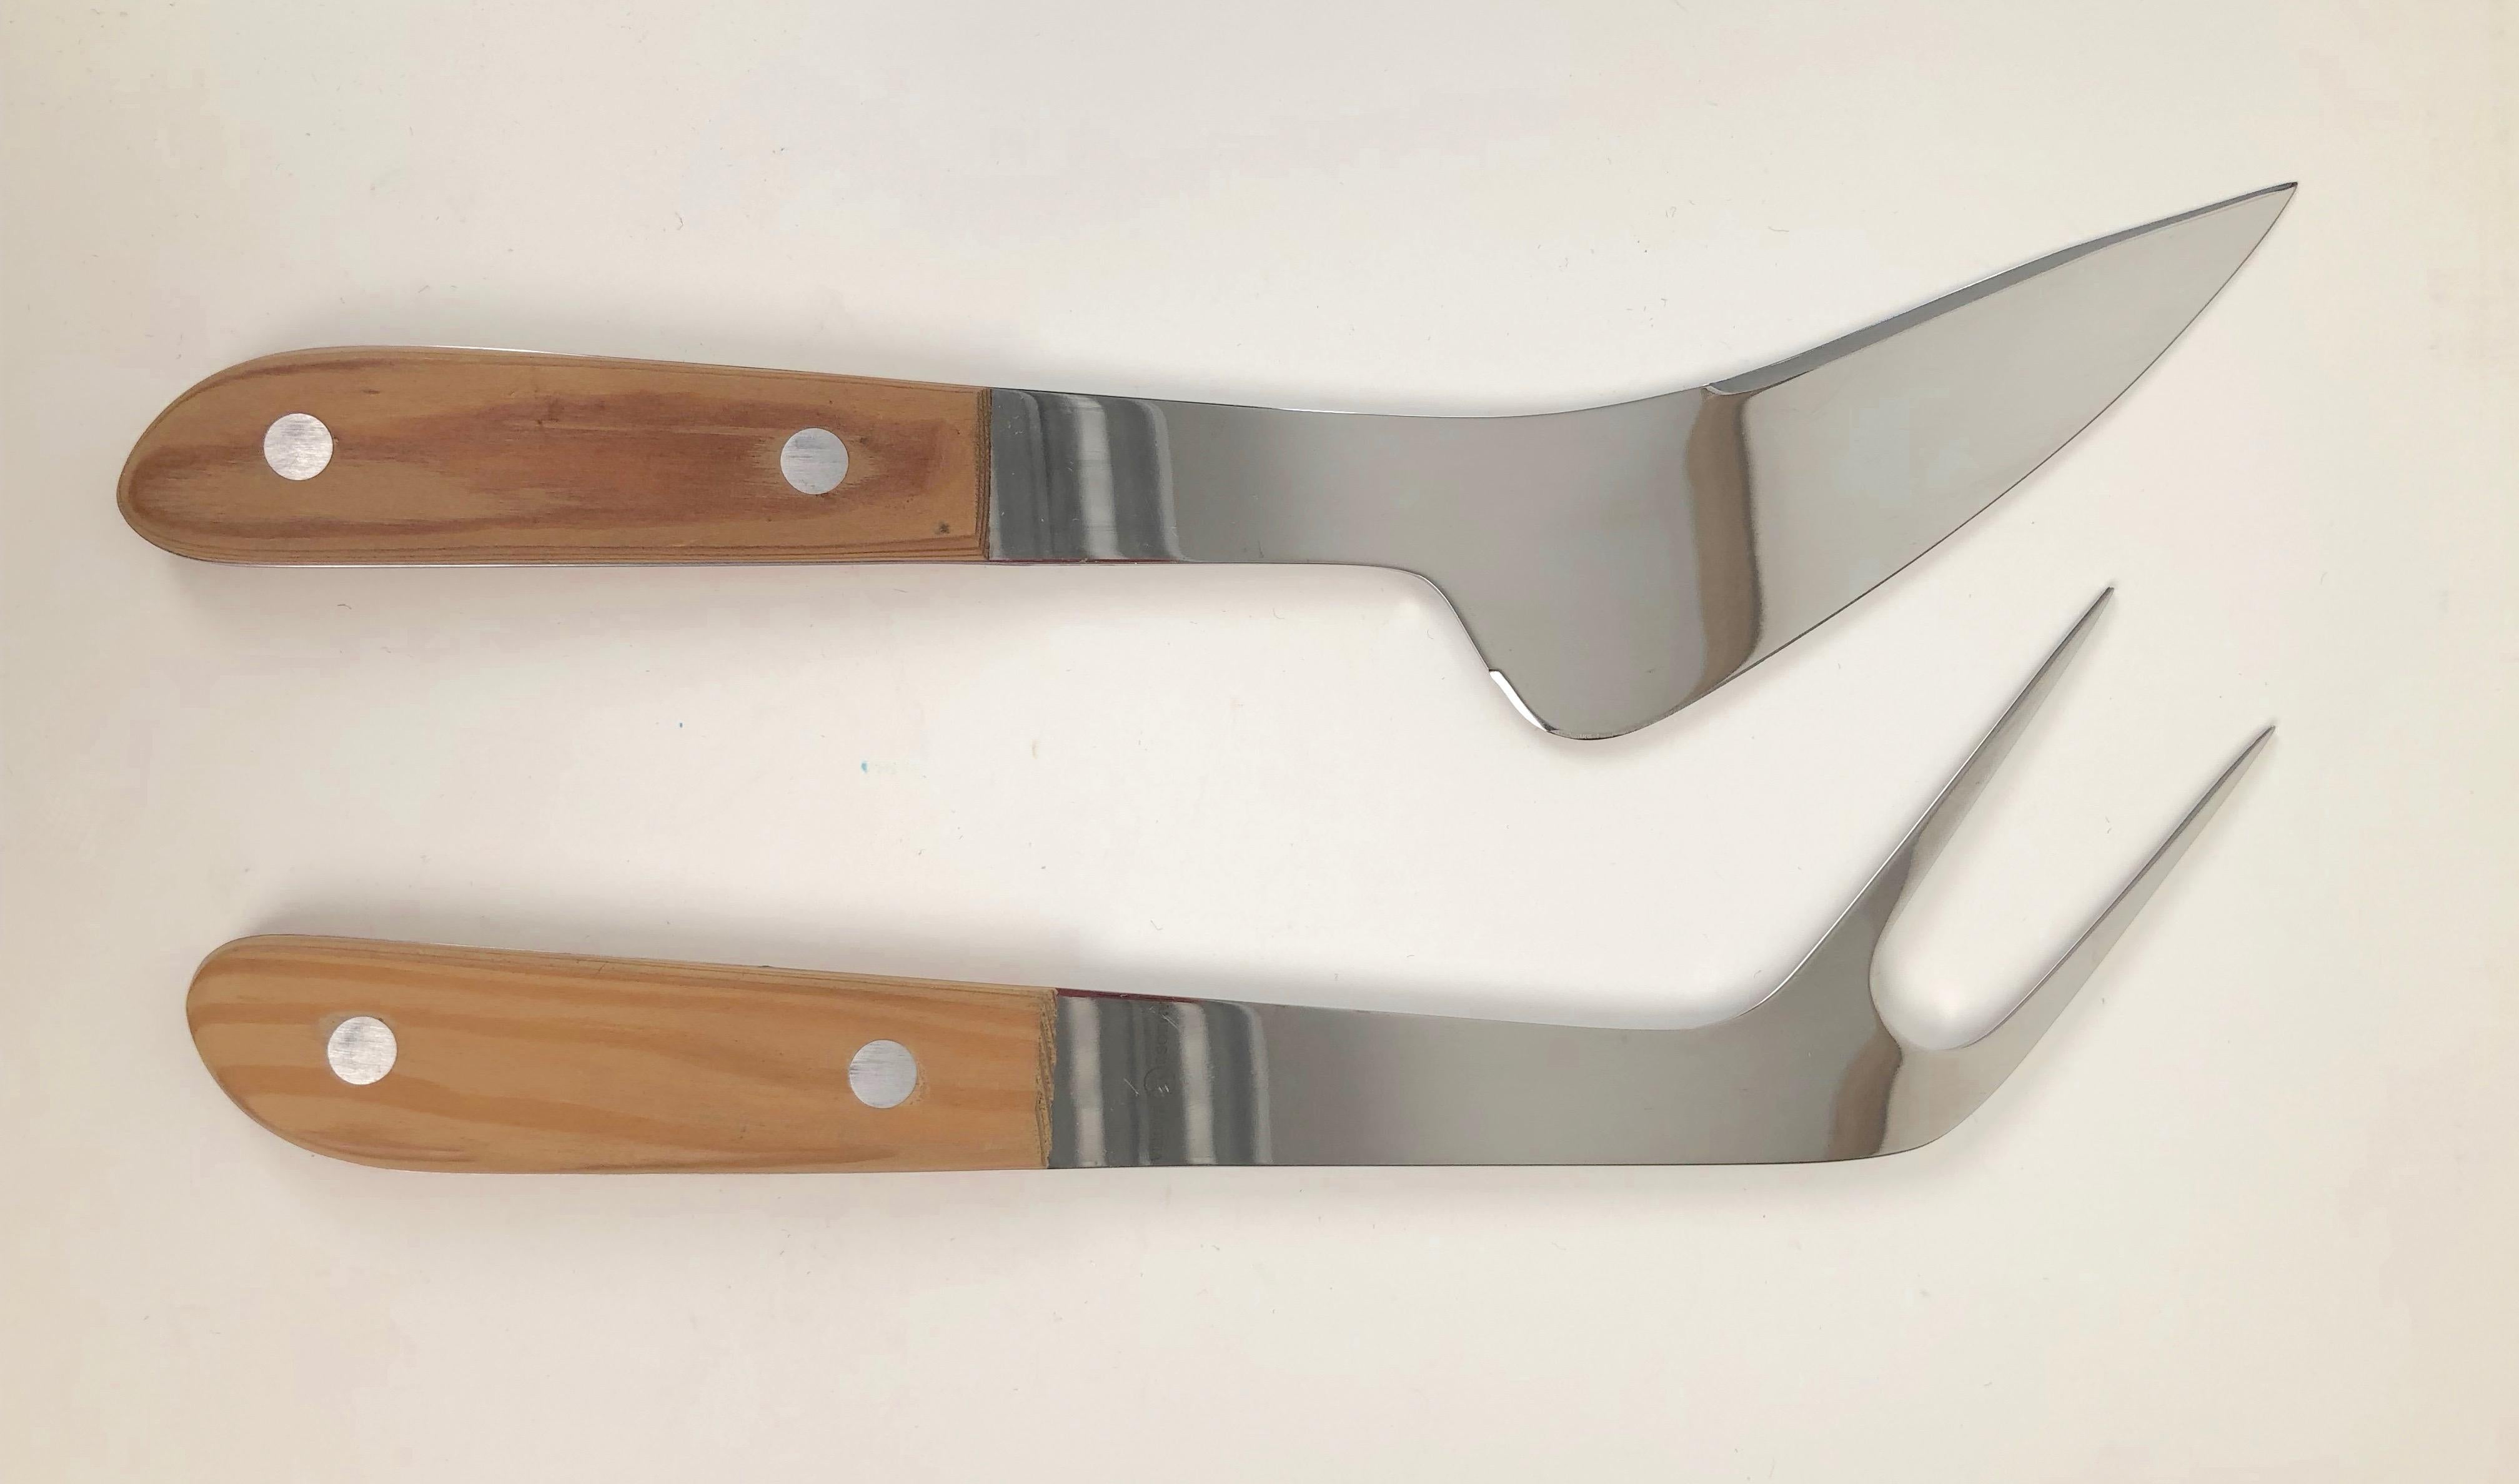 Un couteau et une fourchette à découper autrichiens inhabituels, produits par Emboss Austria.
Composé d'acier inoxydable avec des poignées en bois. Orge utilisée, en très bon état.